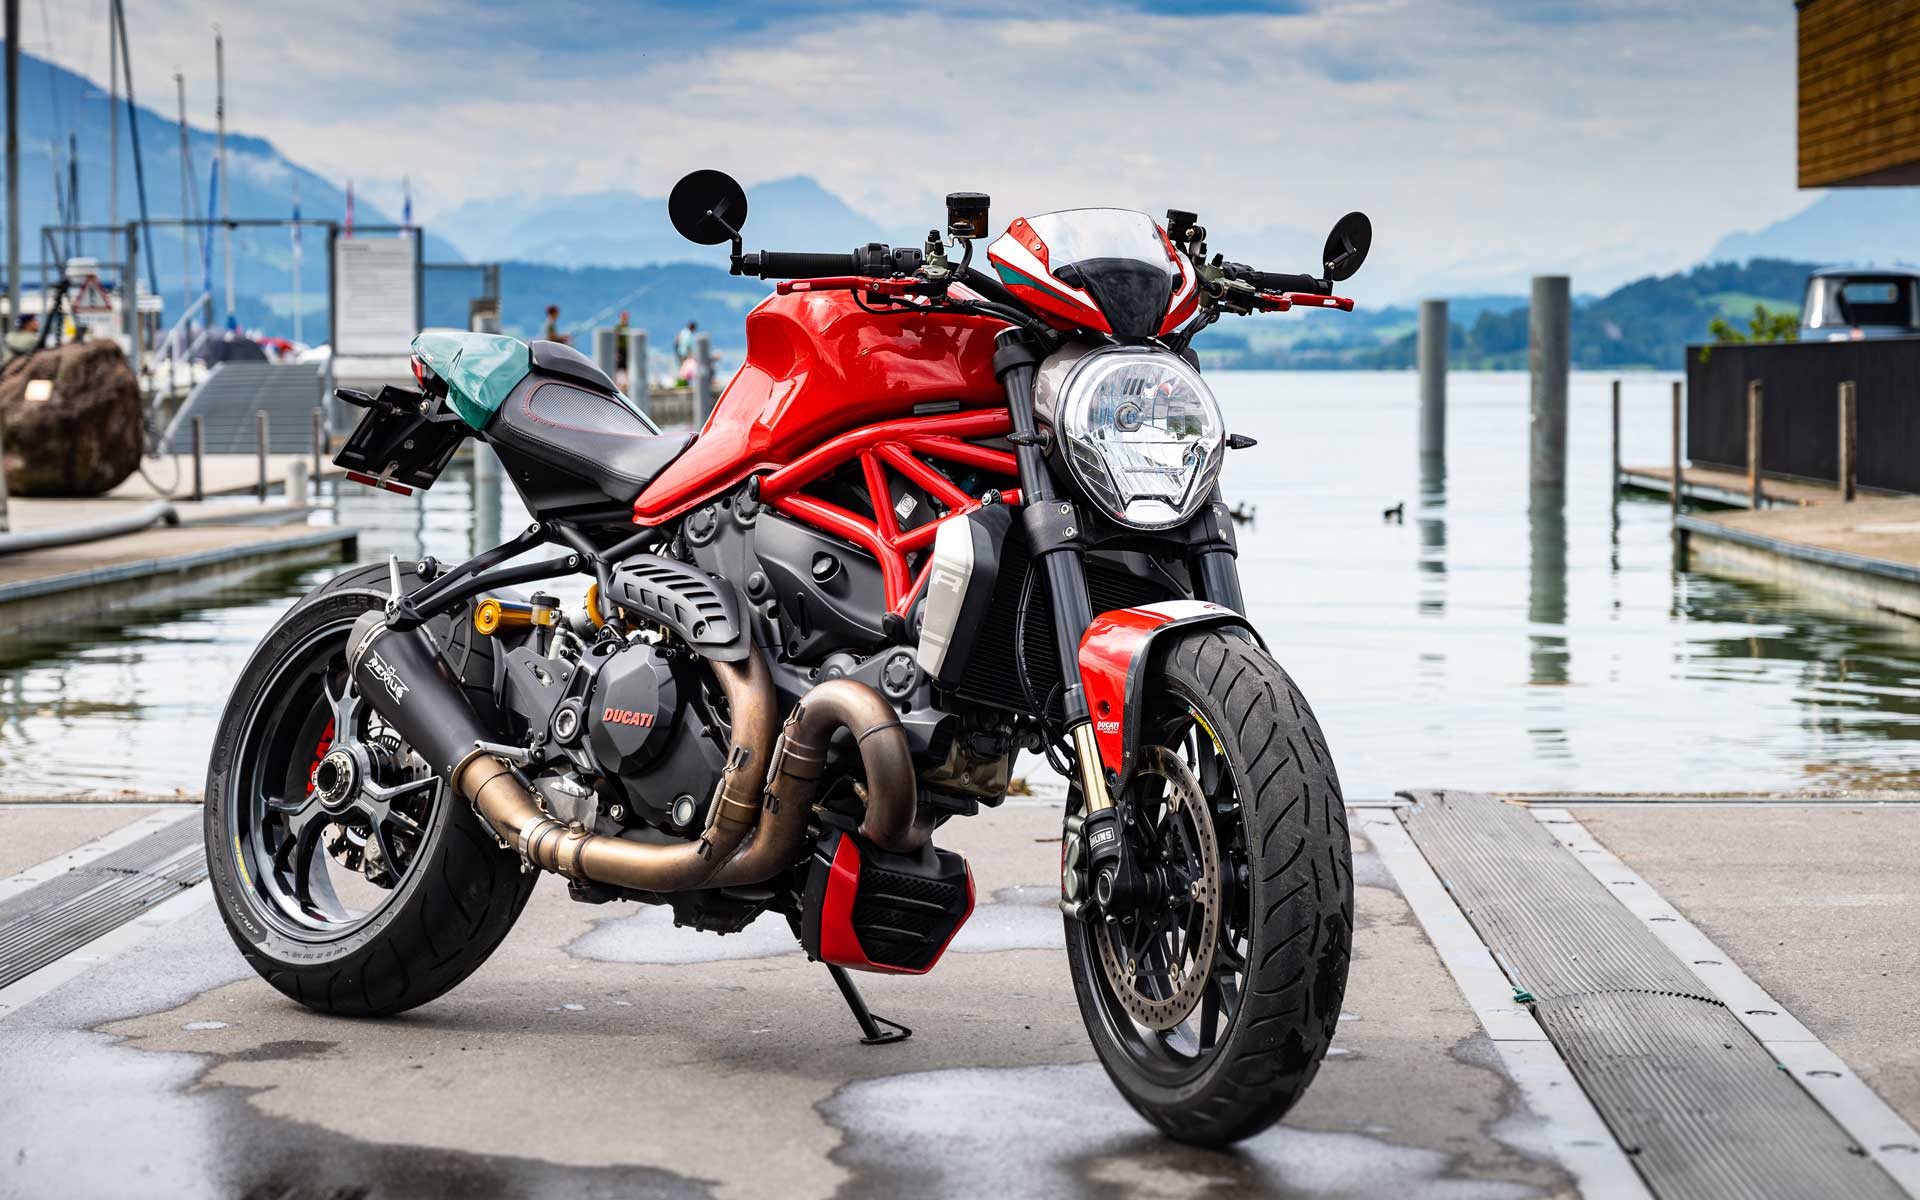 Auch wir sind noch dem Charme des klassischen Gitterrohrrahmens erlegen. Manuelas Ducati Monster 1200 R hat seit Anfang Saison 2021 einen festen Platz im moto-lifestyle-Fuhrpark und wird diesen mit Sicherheit auch noch viele Jahre behalten.